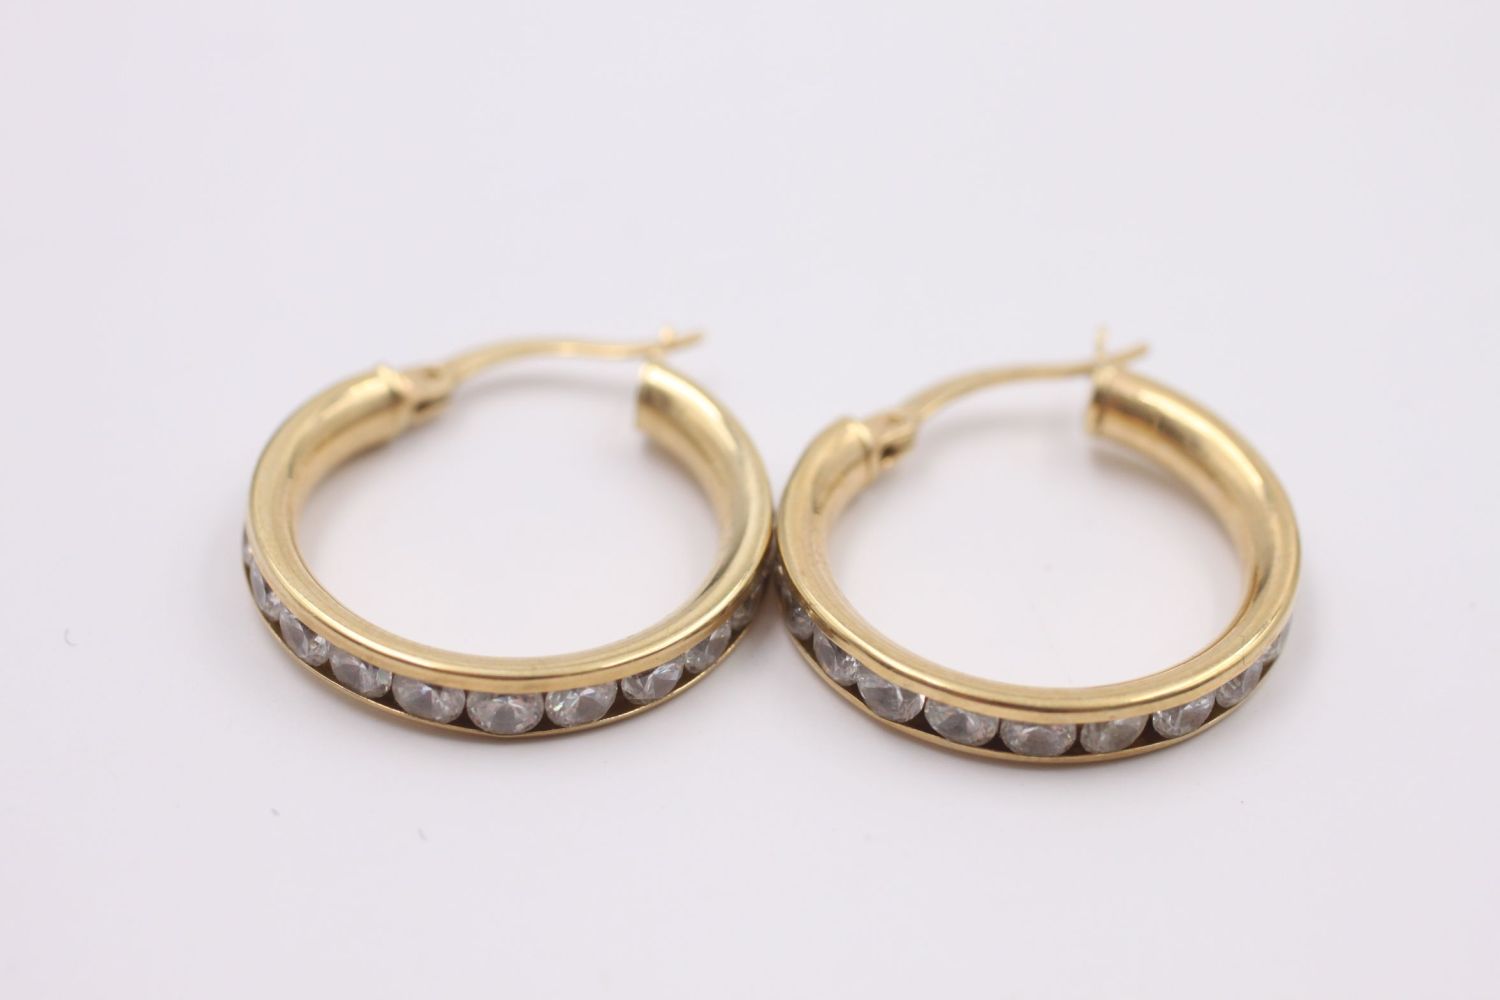 9ct gold gemstone detail hoop earrings 3.7 grams gross